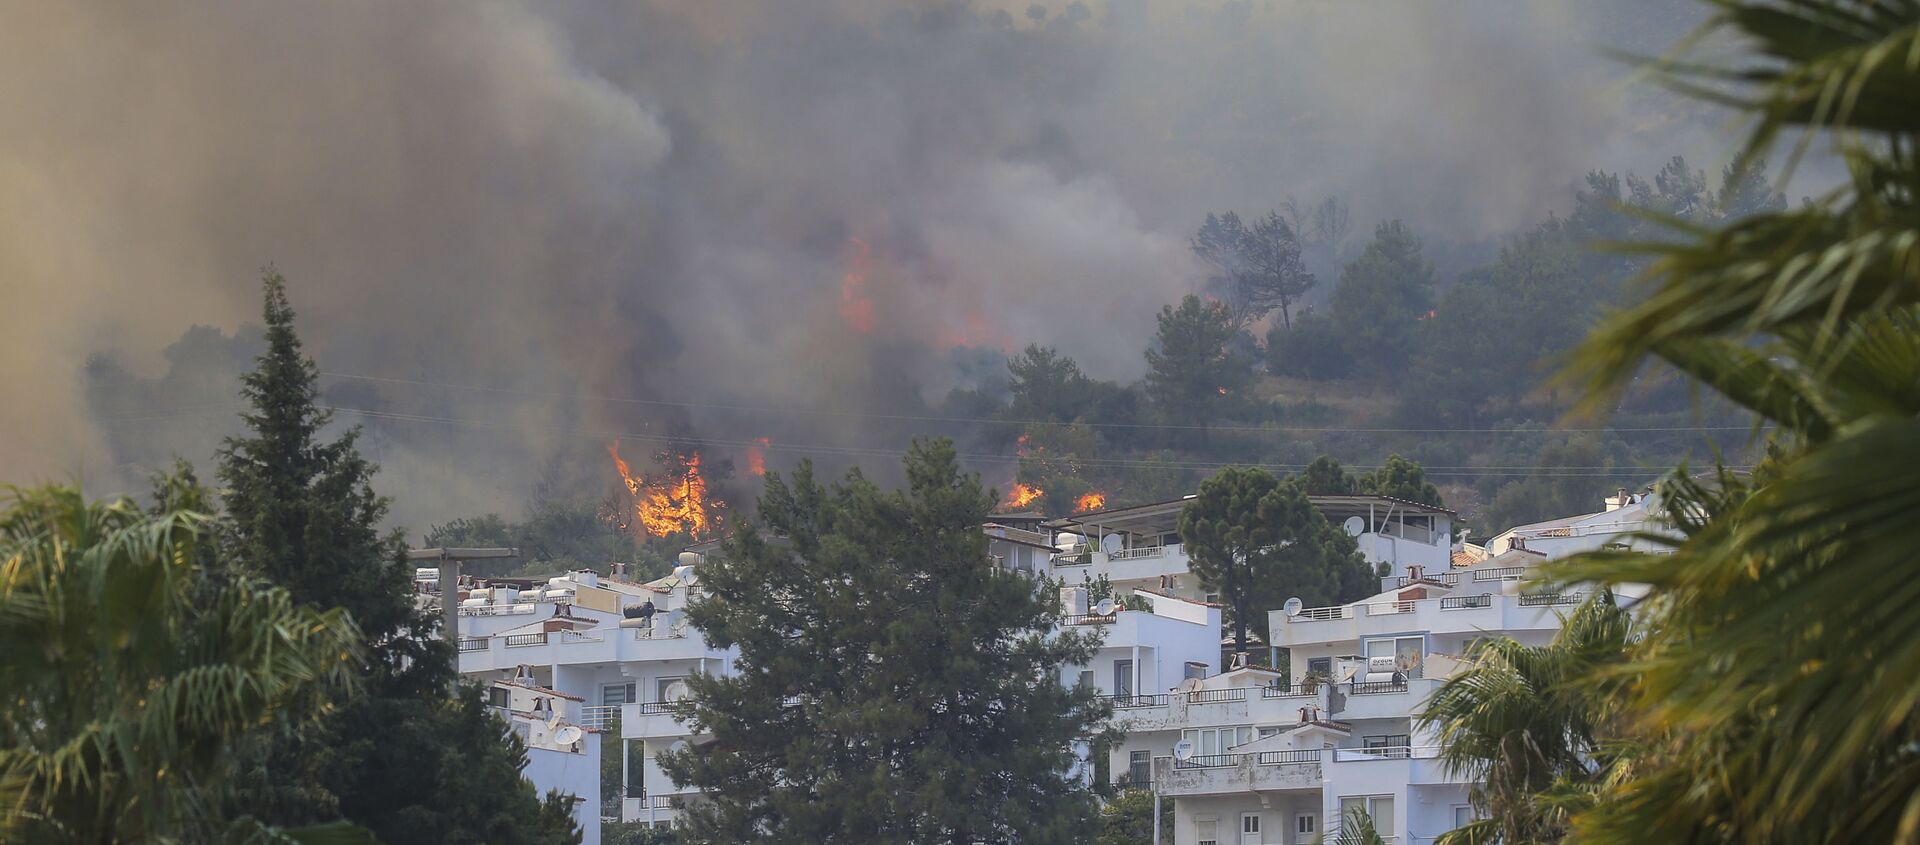 A fire engulfs the area in Oren, near Bodrum, Turkey, on Tuesday, 3 August 2021. - Sputnik International, 1920, 04.08.2021